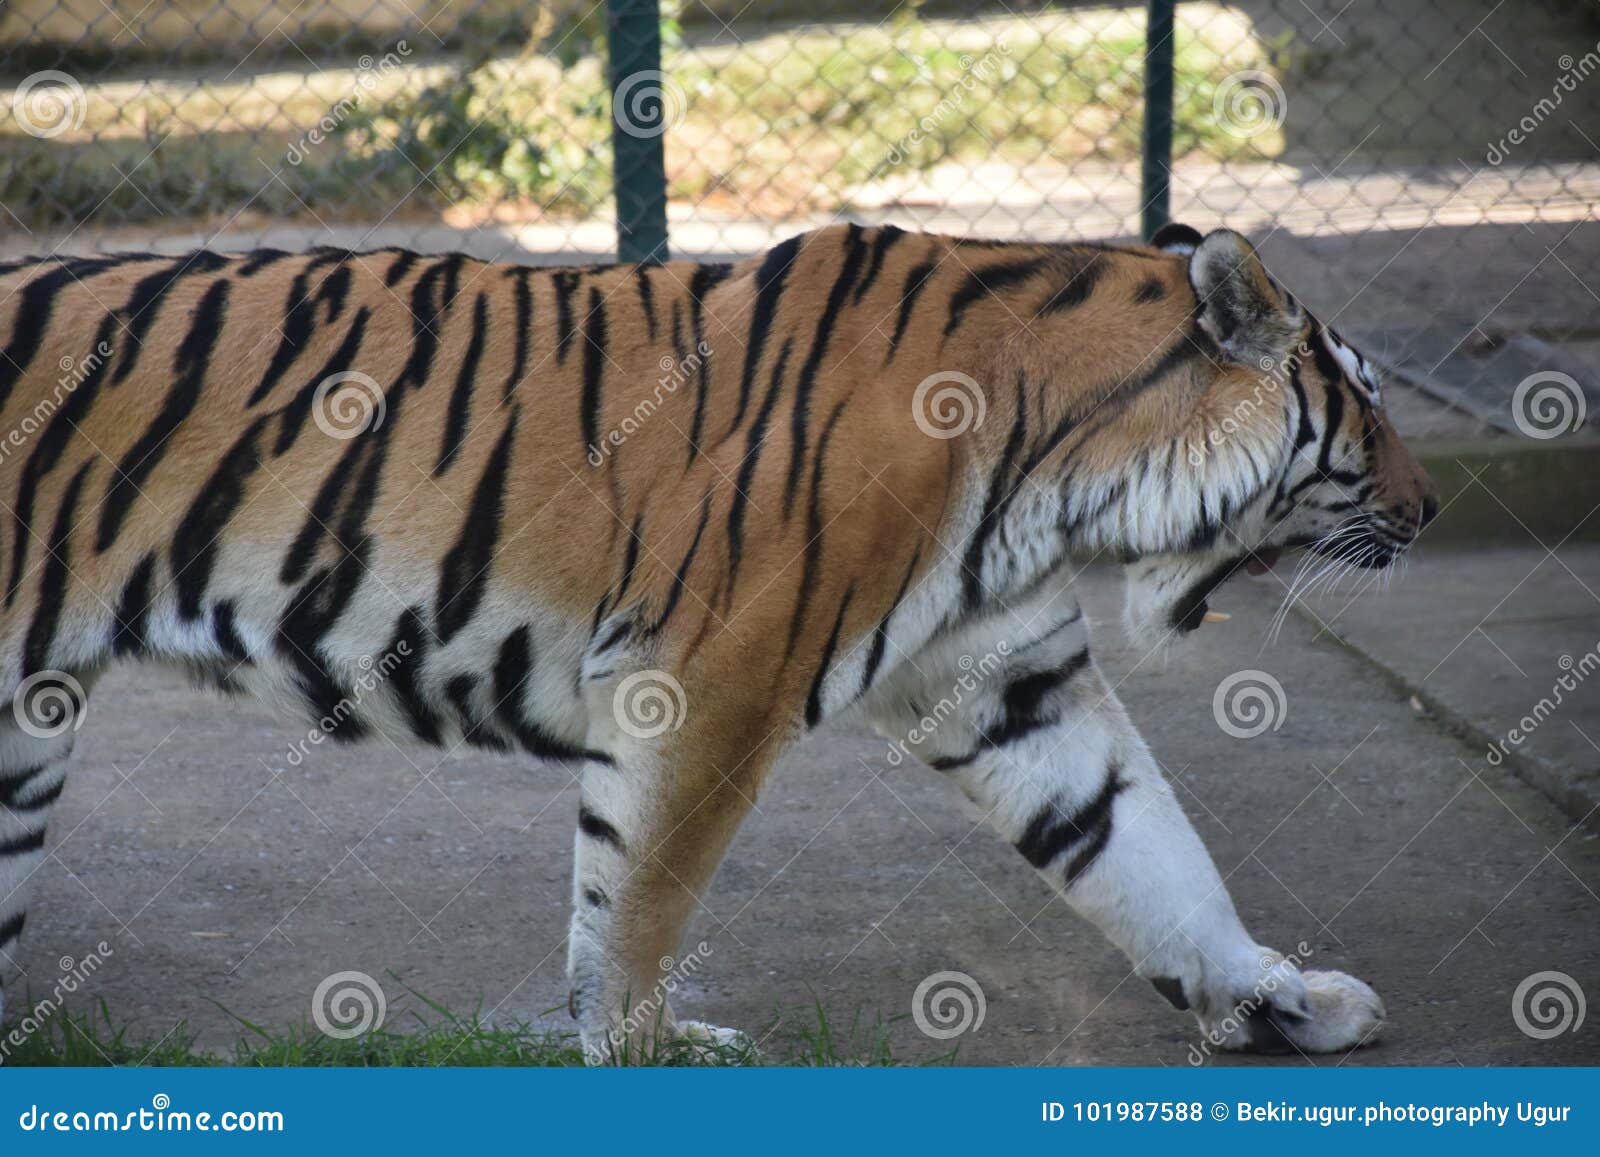 amur tigers